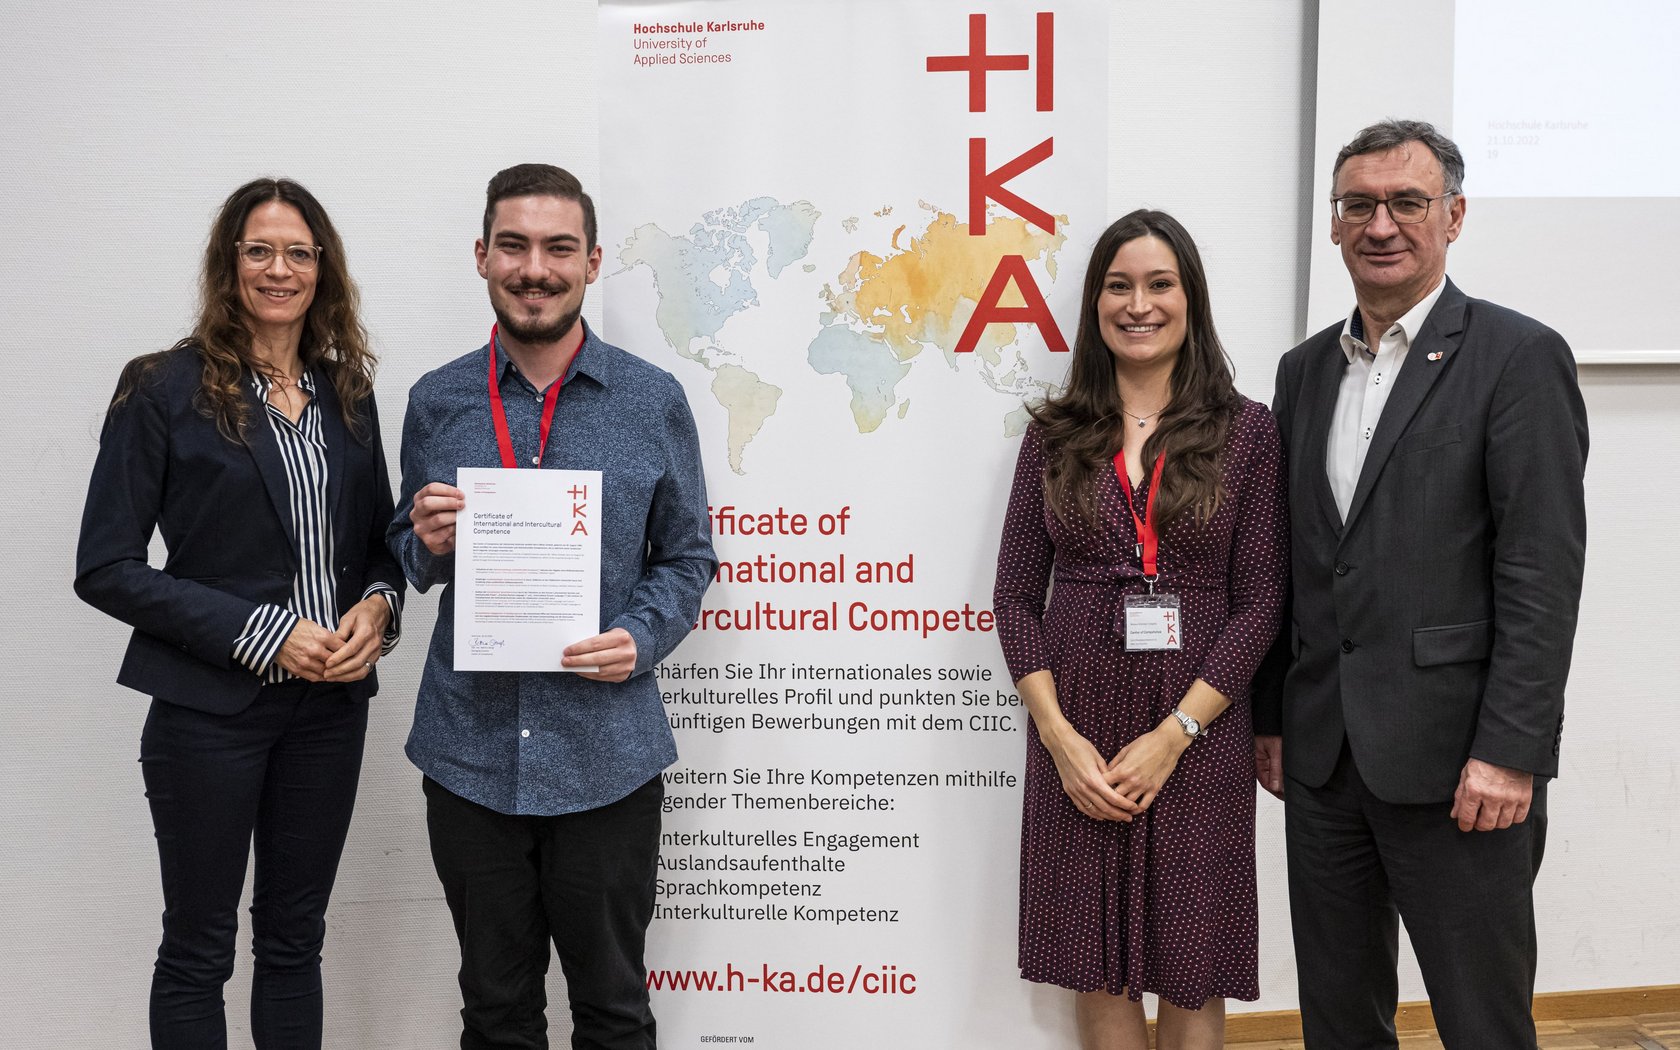 Studierender der Hochschule Karlsruhe erhält als erster Teilnehmer das CIIC